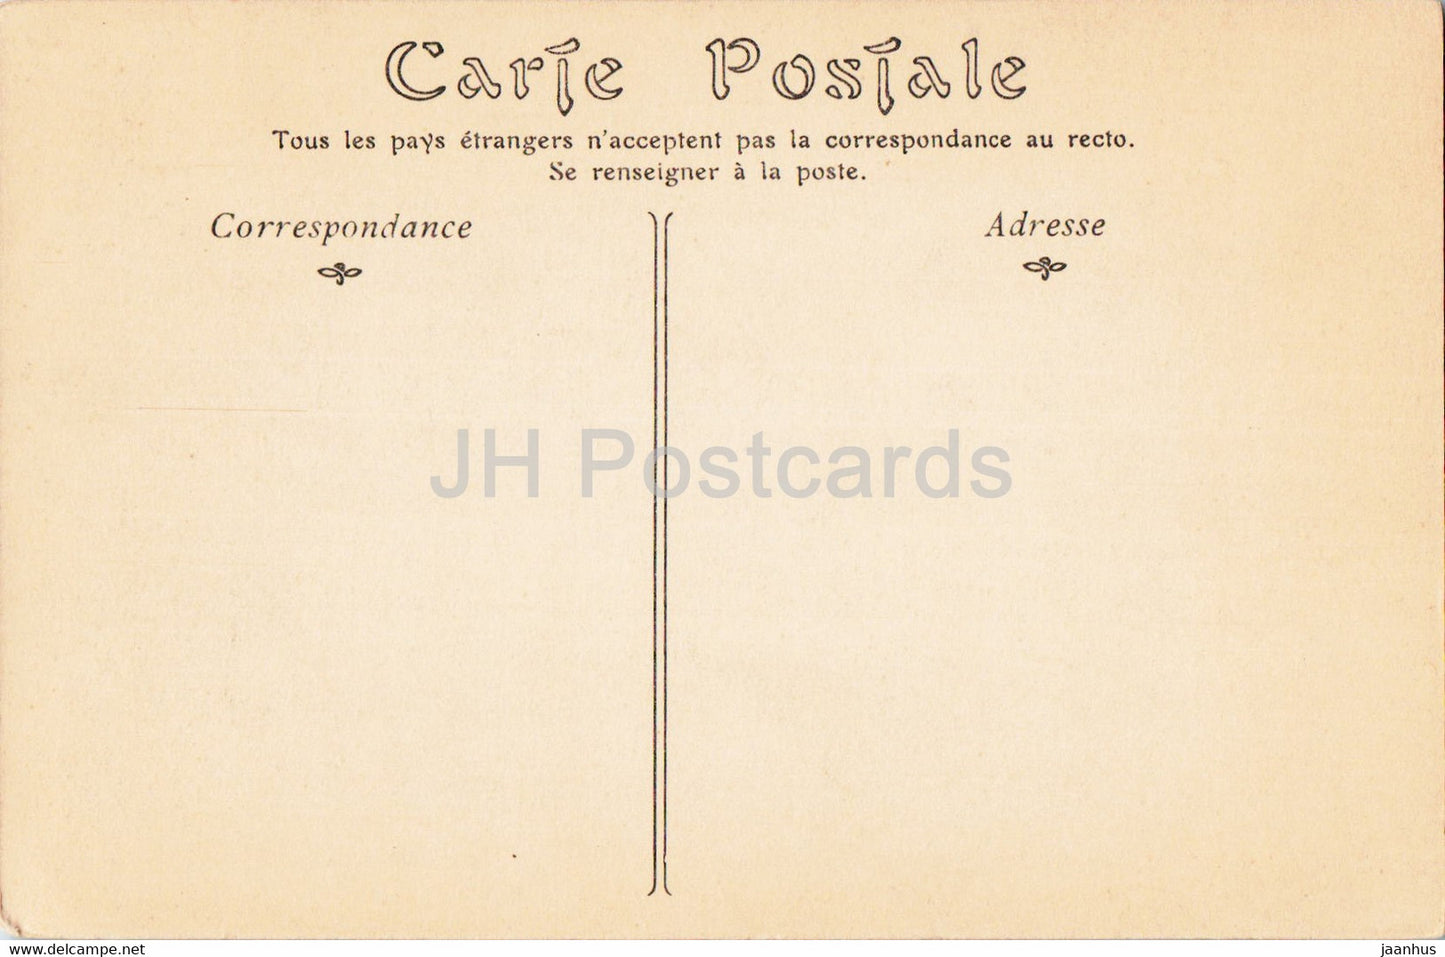 Parc du Petit Trianon - La Maison de la Reine - 41 - carte postale ancienne - France - inutilisée